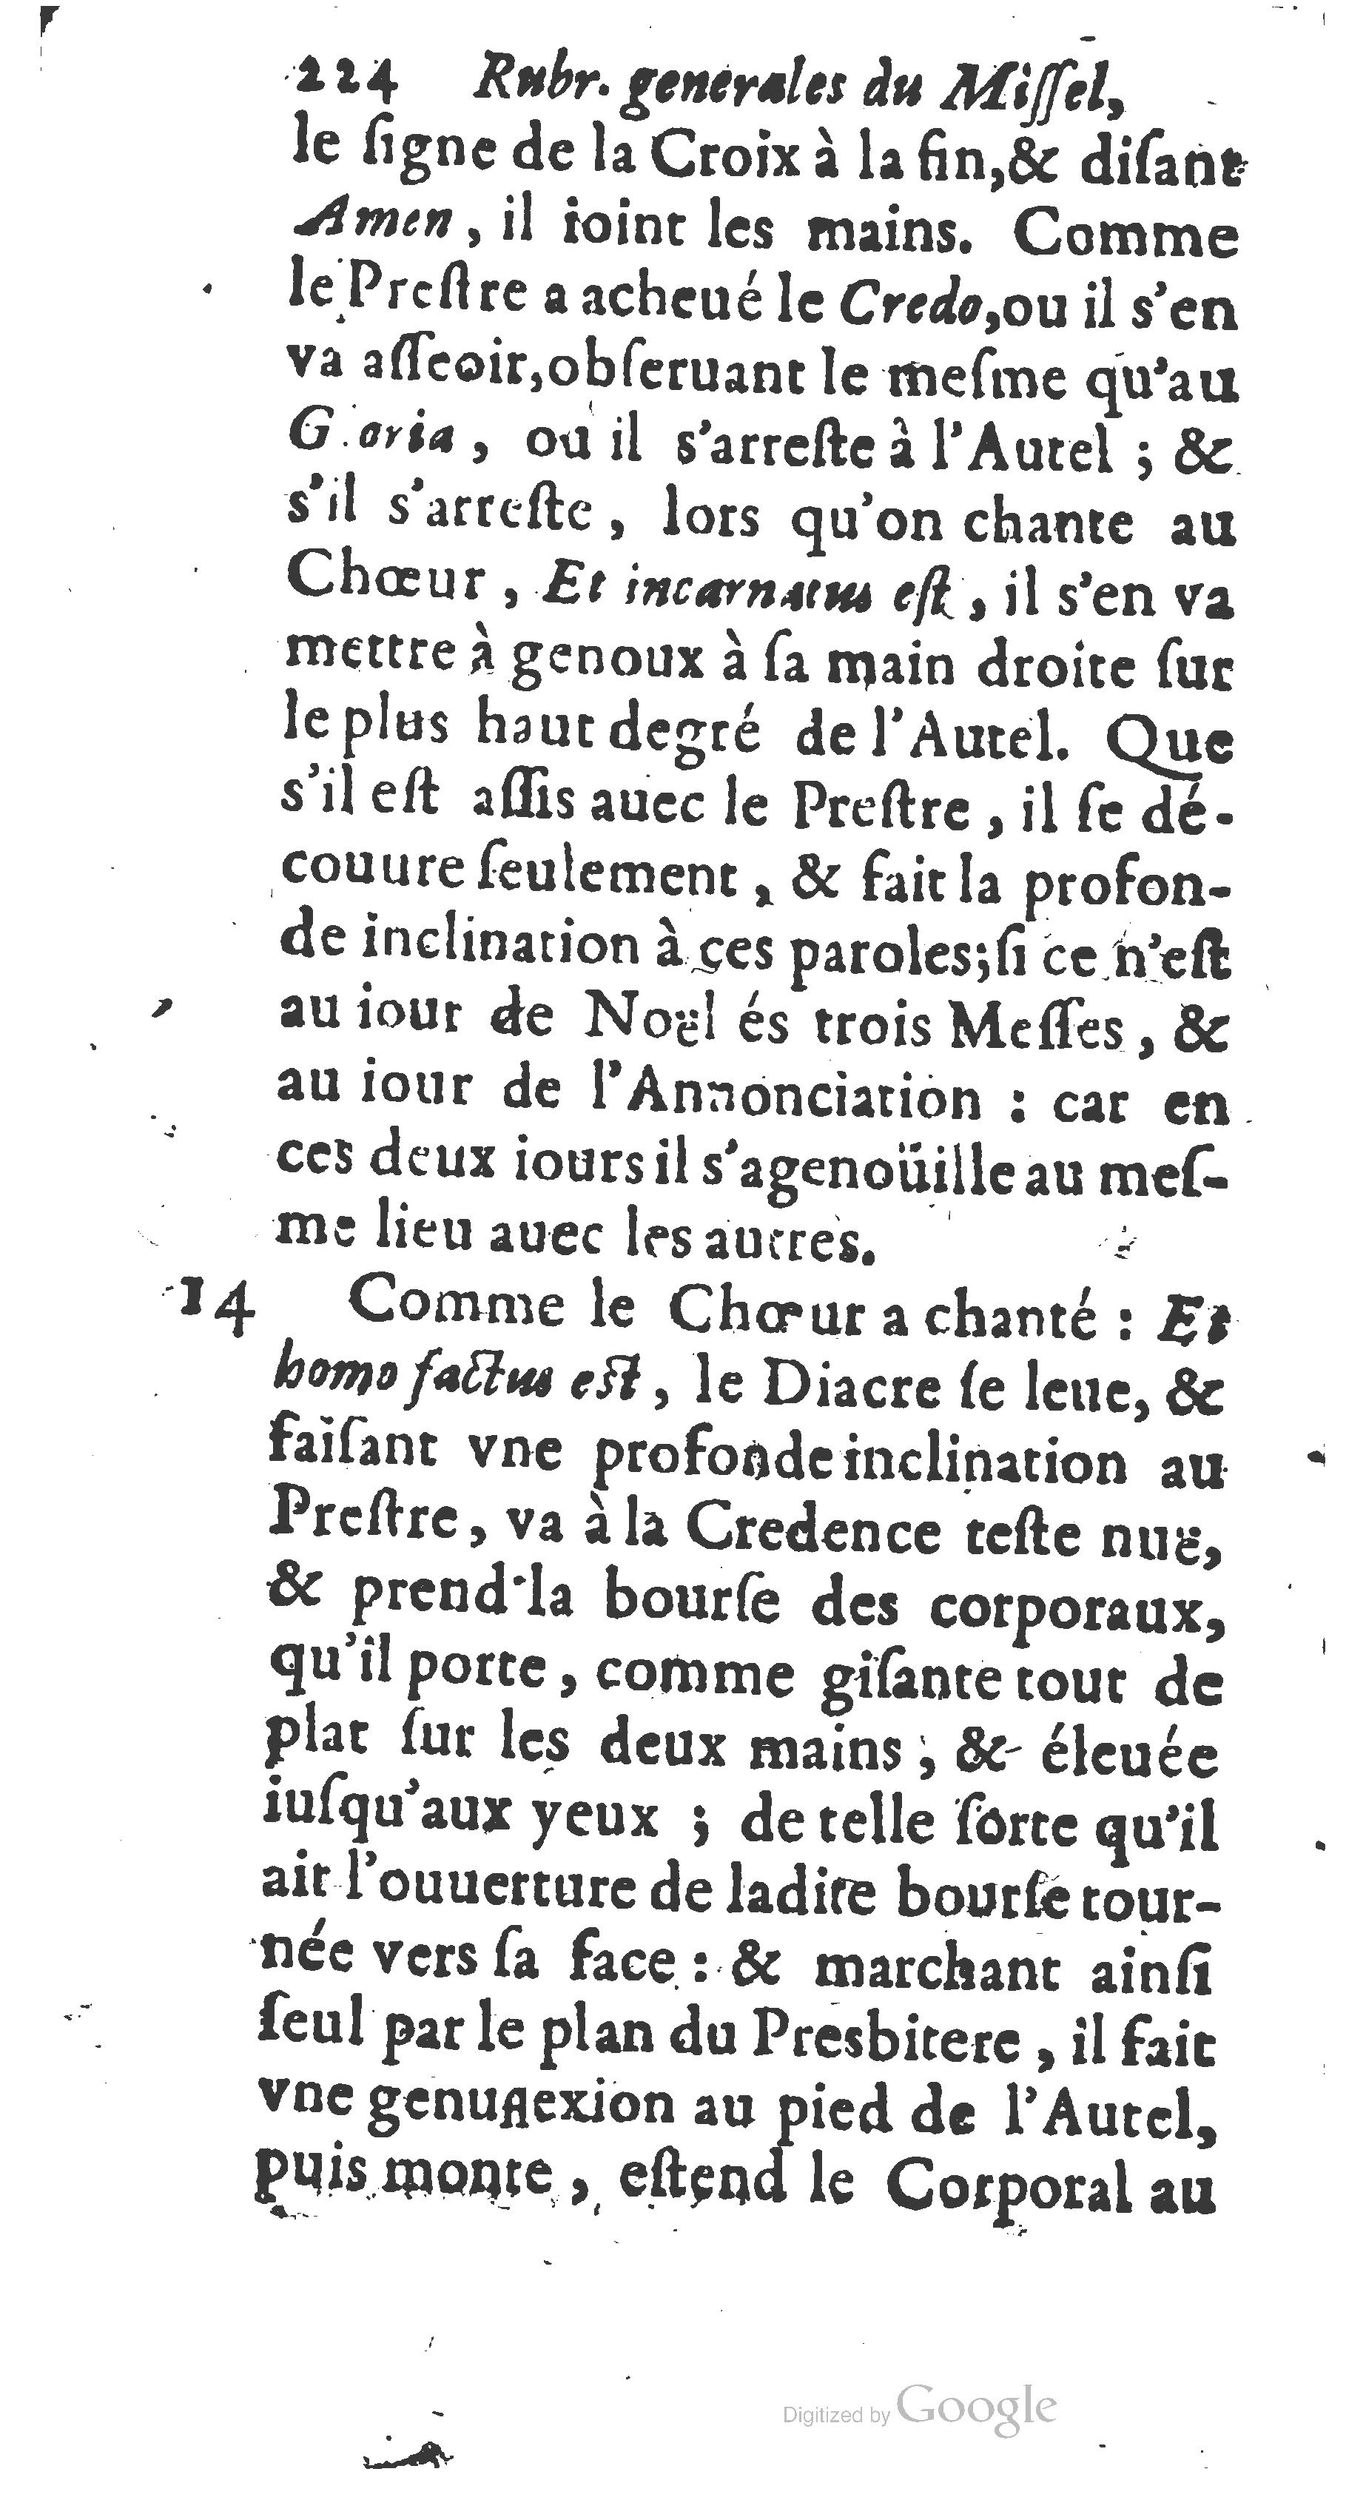 1651 Abrégé du trésor des cérémonies ecclésiastiques Guillermet_BM Lyon_Page_243.jpg